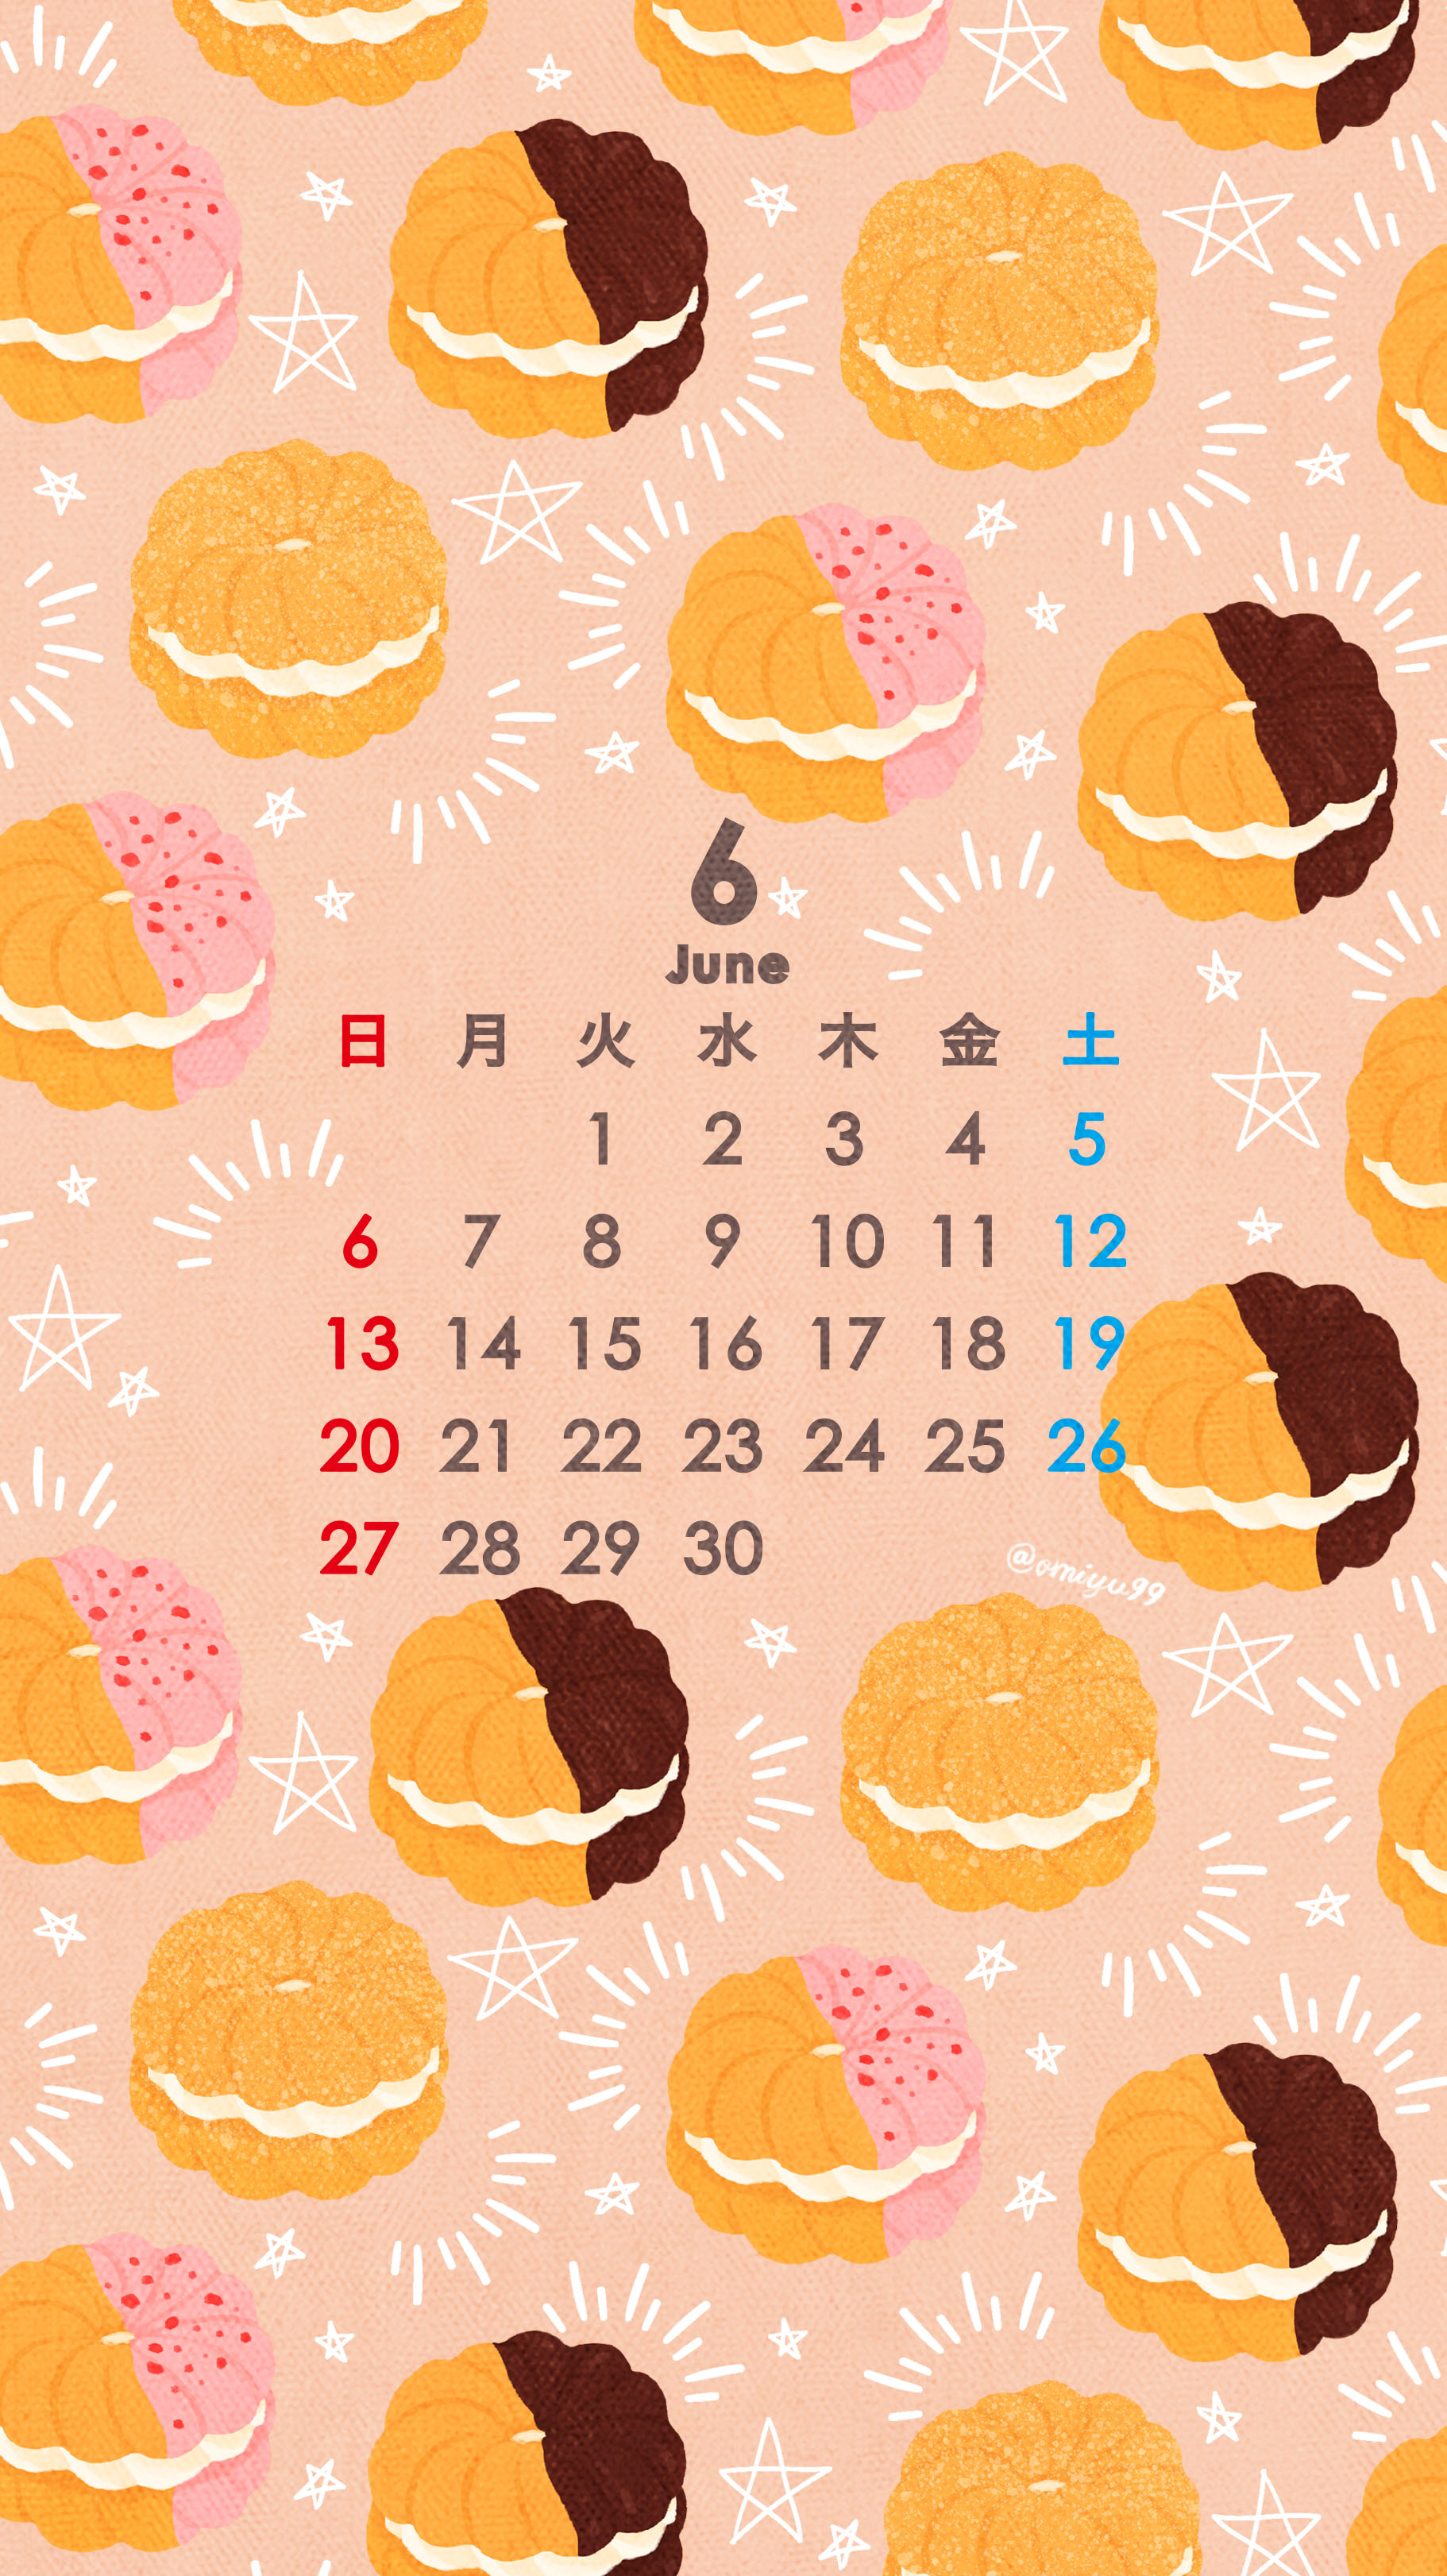 Omiyu お返事遅くなります フレンチクルーラーな壁紙カレンダー 21年6月 Illust Illustration 壁紙 イラスト Iphone壁紙 ドーナツ Donuts フレンチクルーラー Frenchcruller 食べ物 カレンダー リクエストありがとうございます T